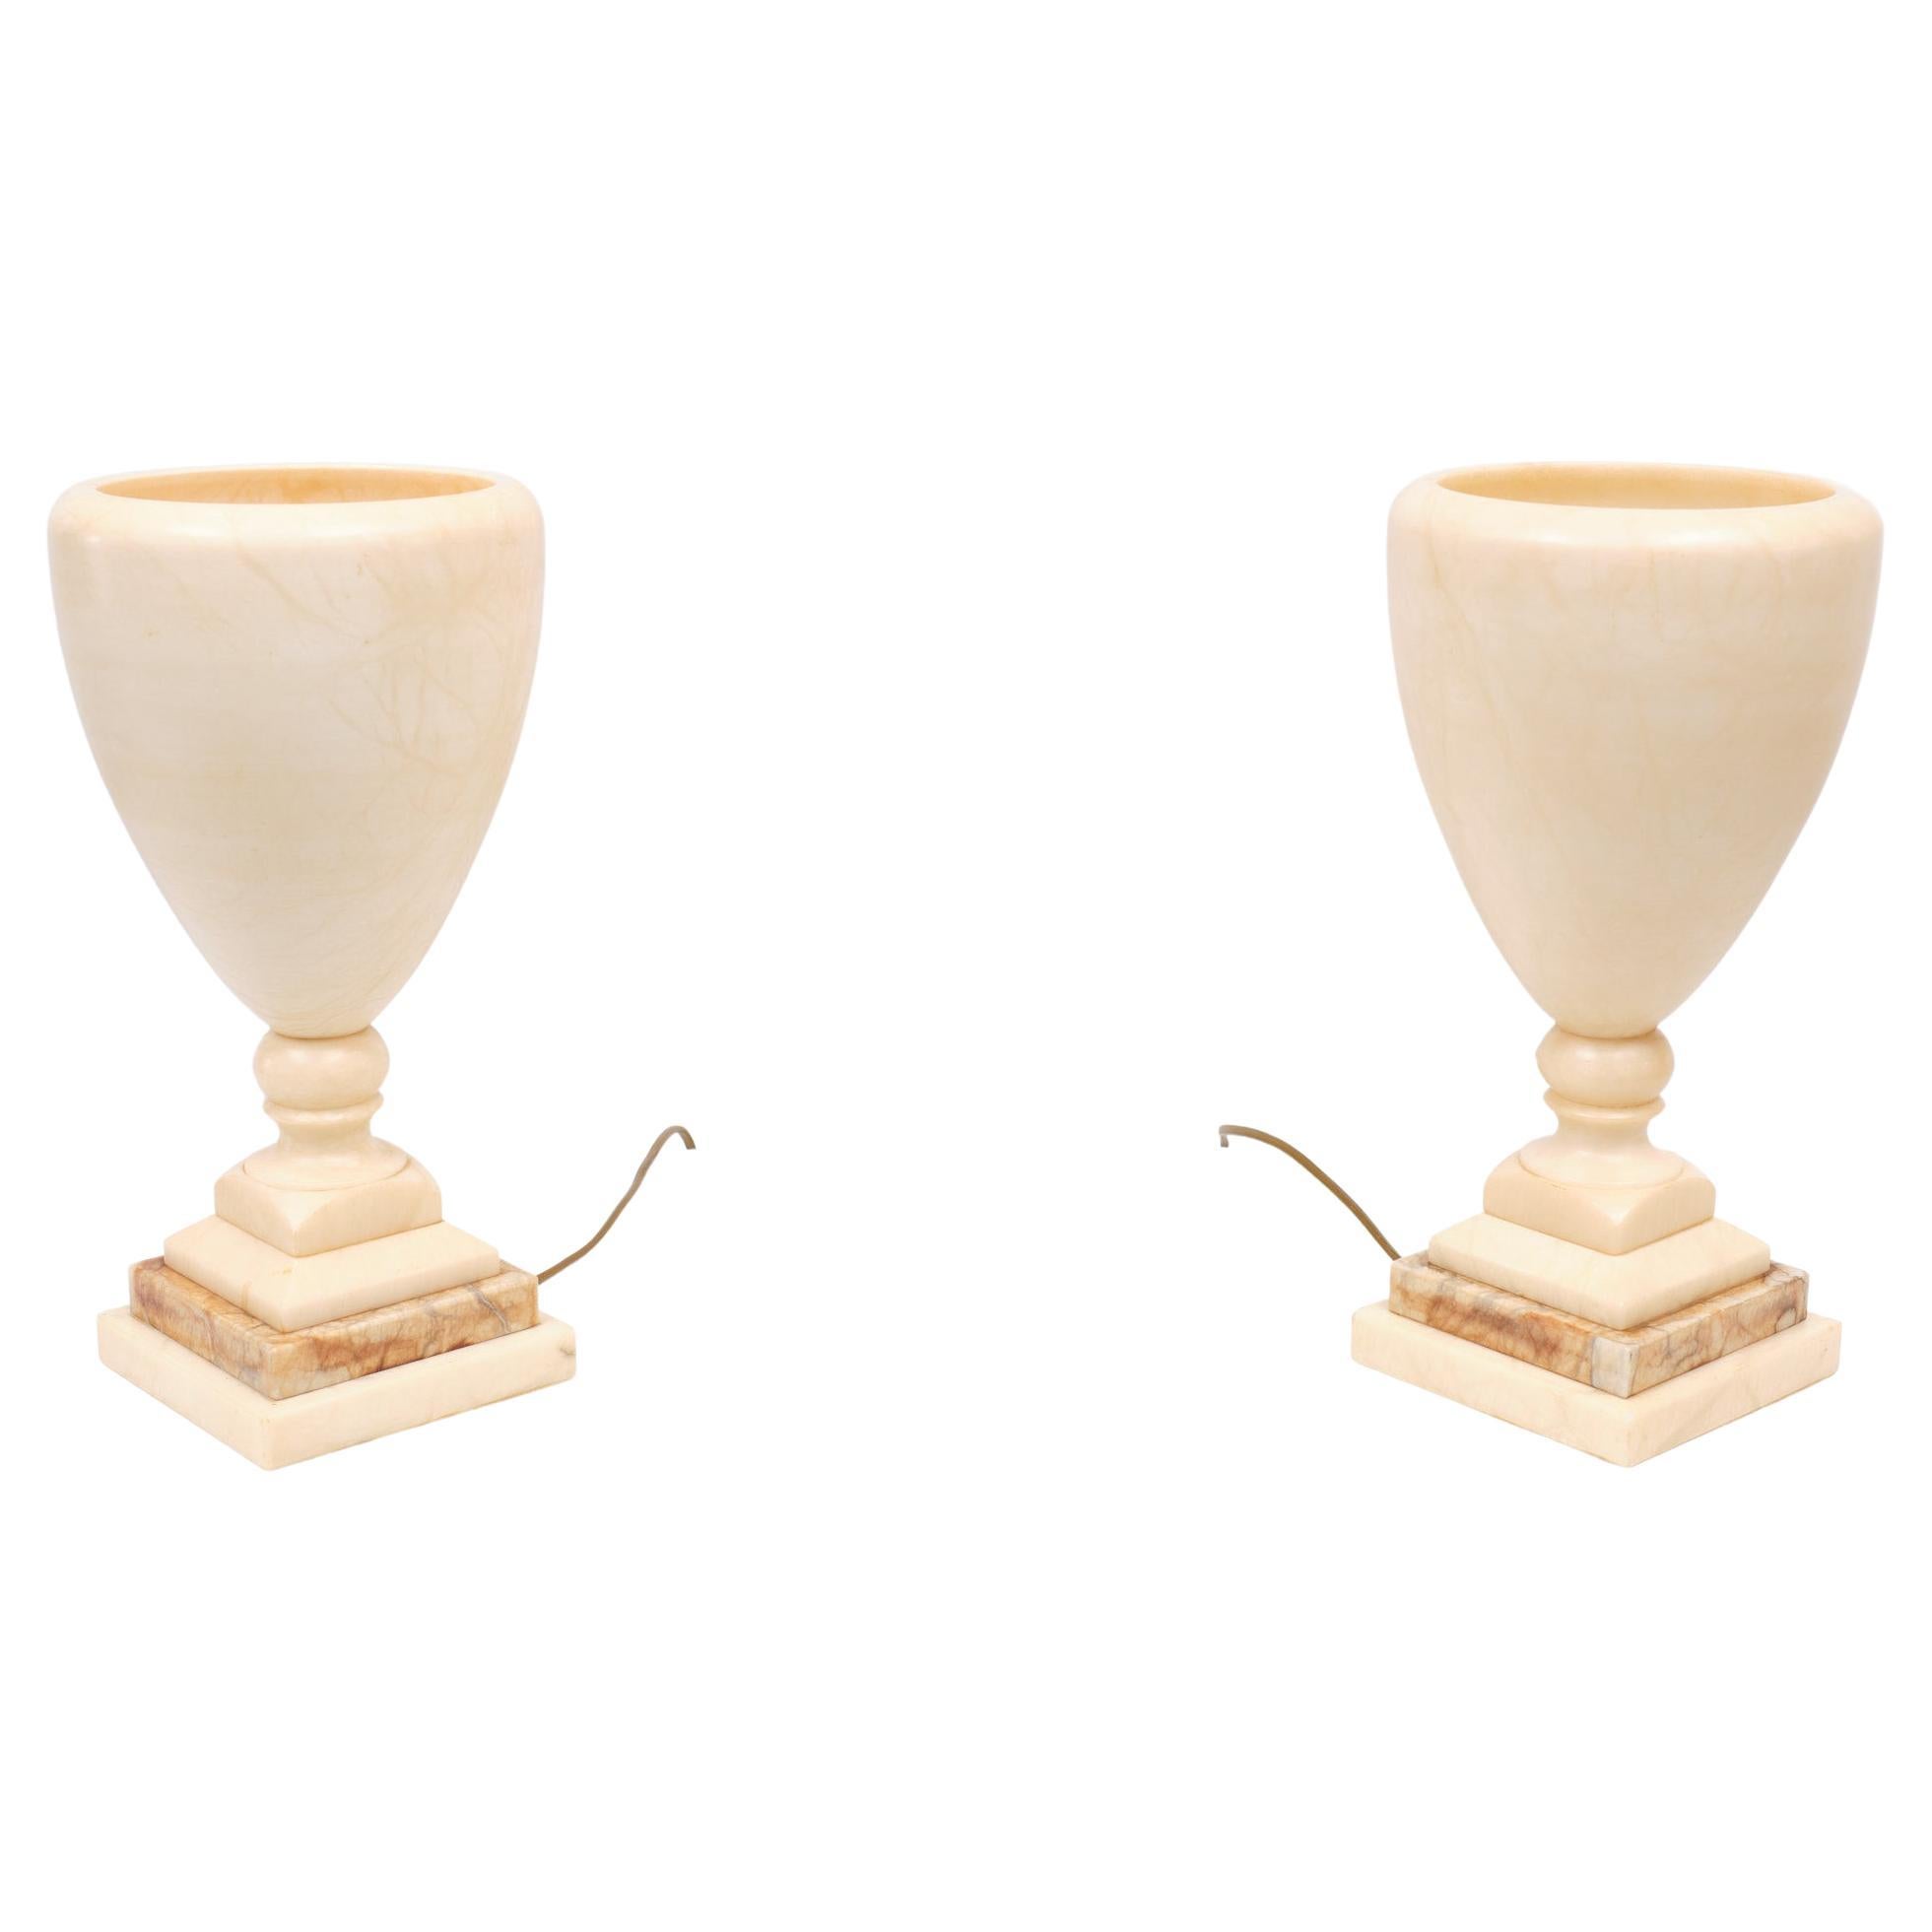 Atemberaubender Satz Alabaster-Tischlampen, hergestellt von Alabastros Pegasam Spanien 1970er Jahre 
Schöne Zeichnung im Marmor, wenn die Lampen abgedeckt sind. Die Farbe ist hellrosa.                Klassische Vasenform .  kleine Steckdosenlampen